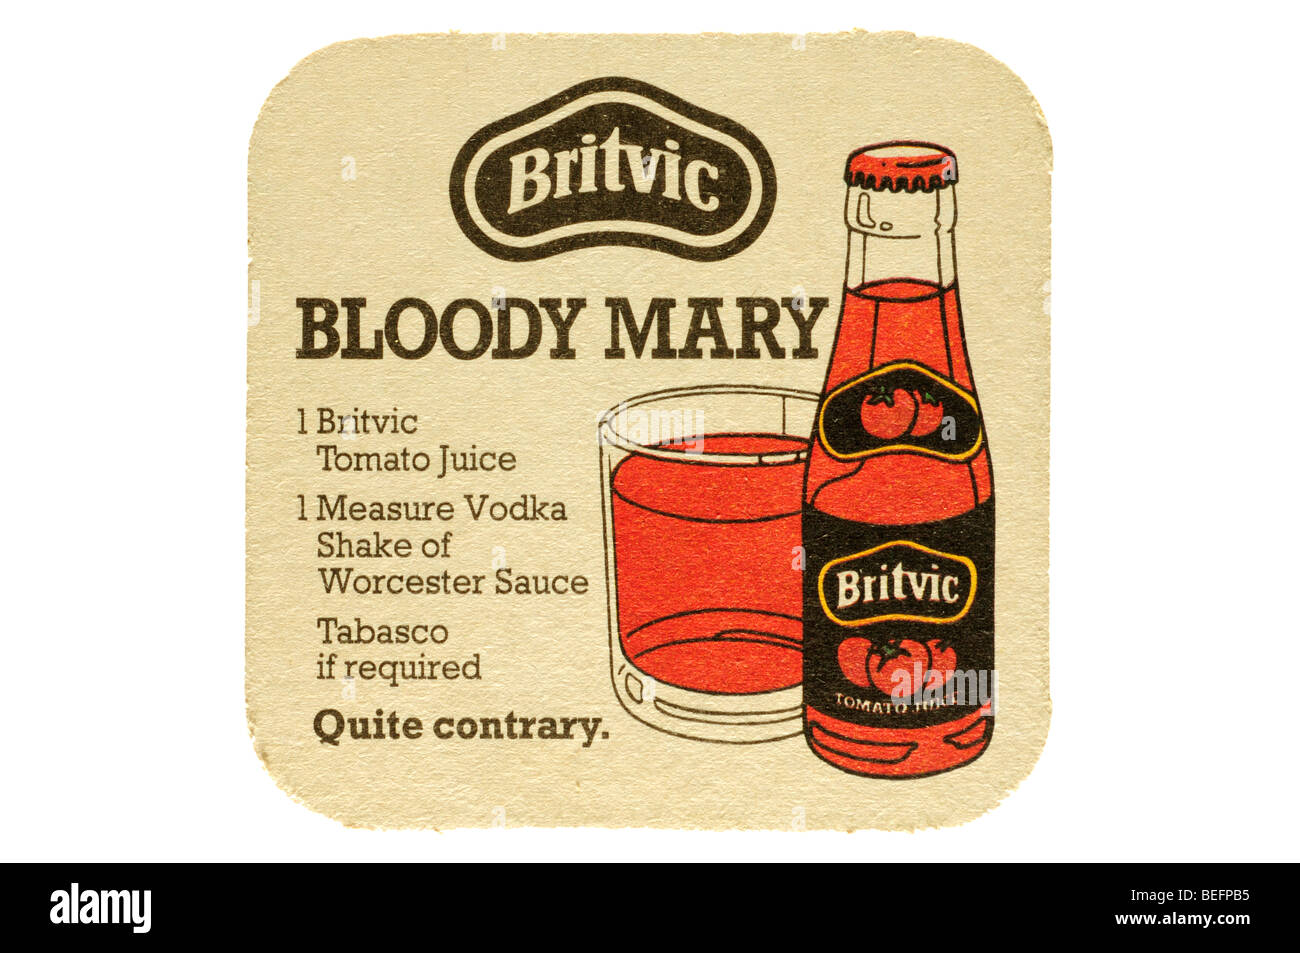 Britvic bloody mary 1 britvic di succo di pomodoro 1 misura la vodka agitare di salsa Worcester tabasco è richiesto abbastanza contrario Foto Stock